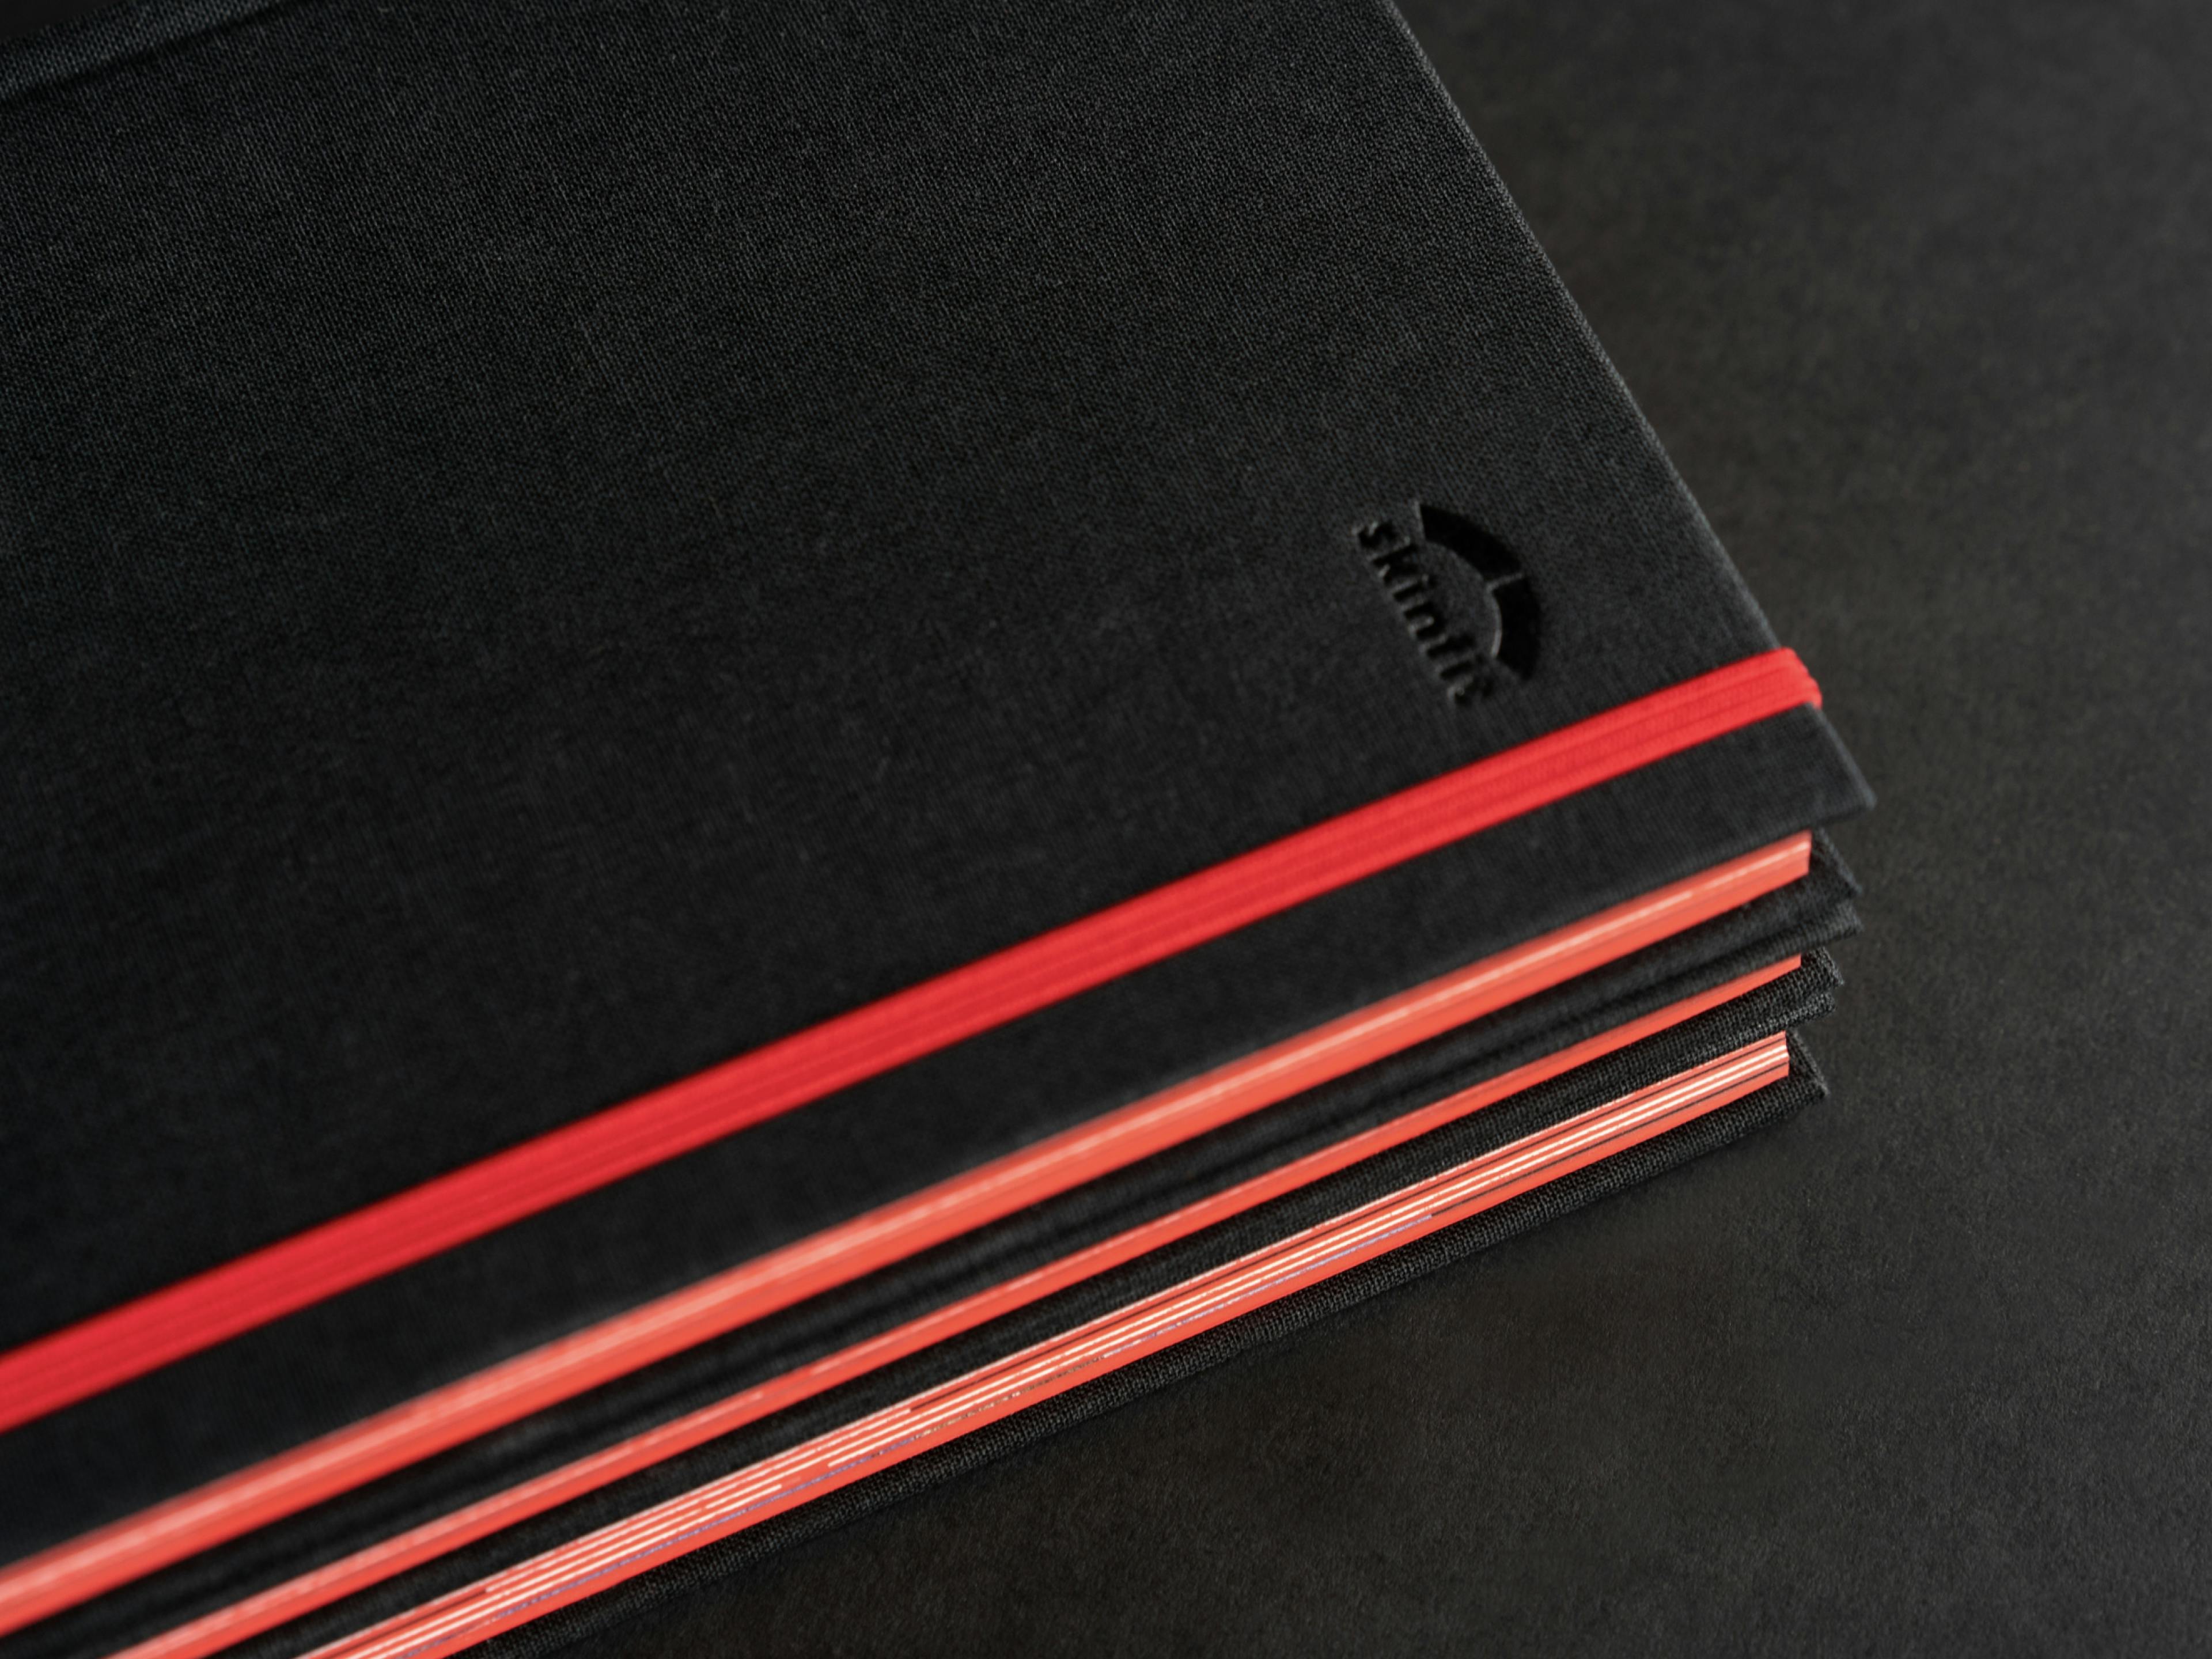 Detailfoto vom skinfit brandbook mit schwarzem Leineneinband, Blindprägung, rotem Gummiband und rotem Farbschnitt © gm gobiq